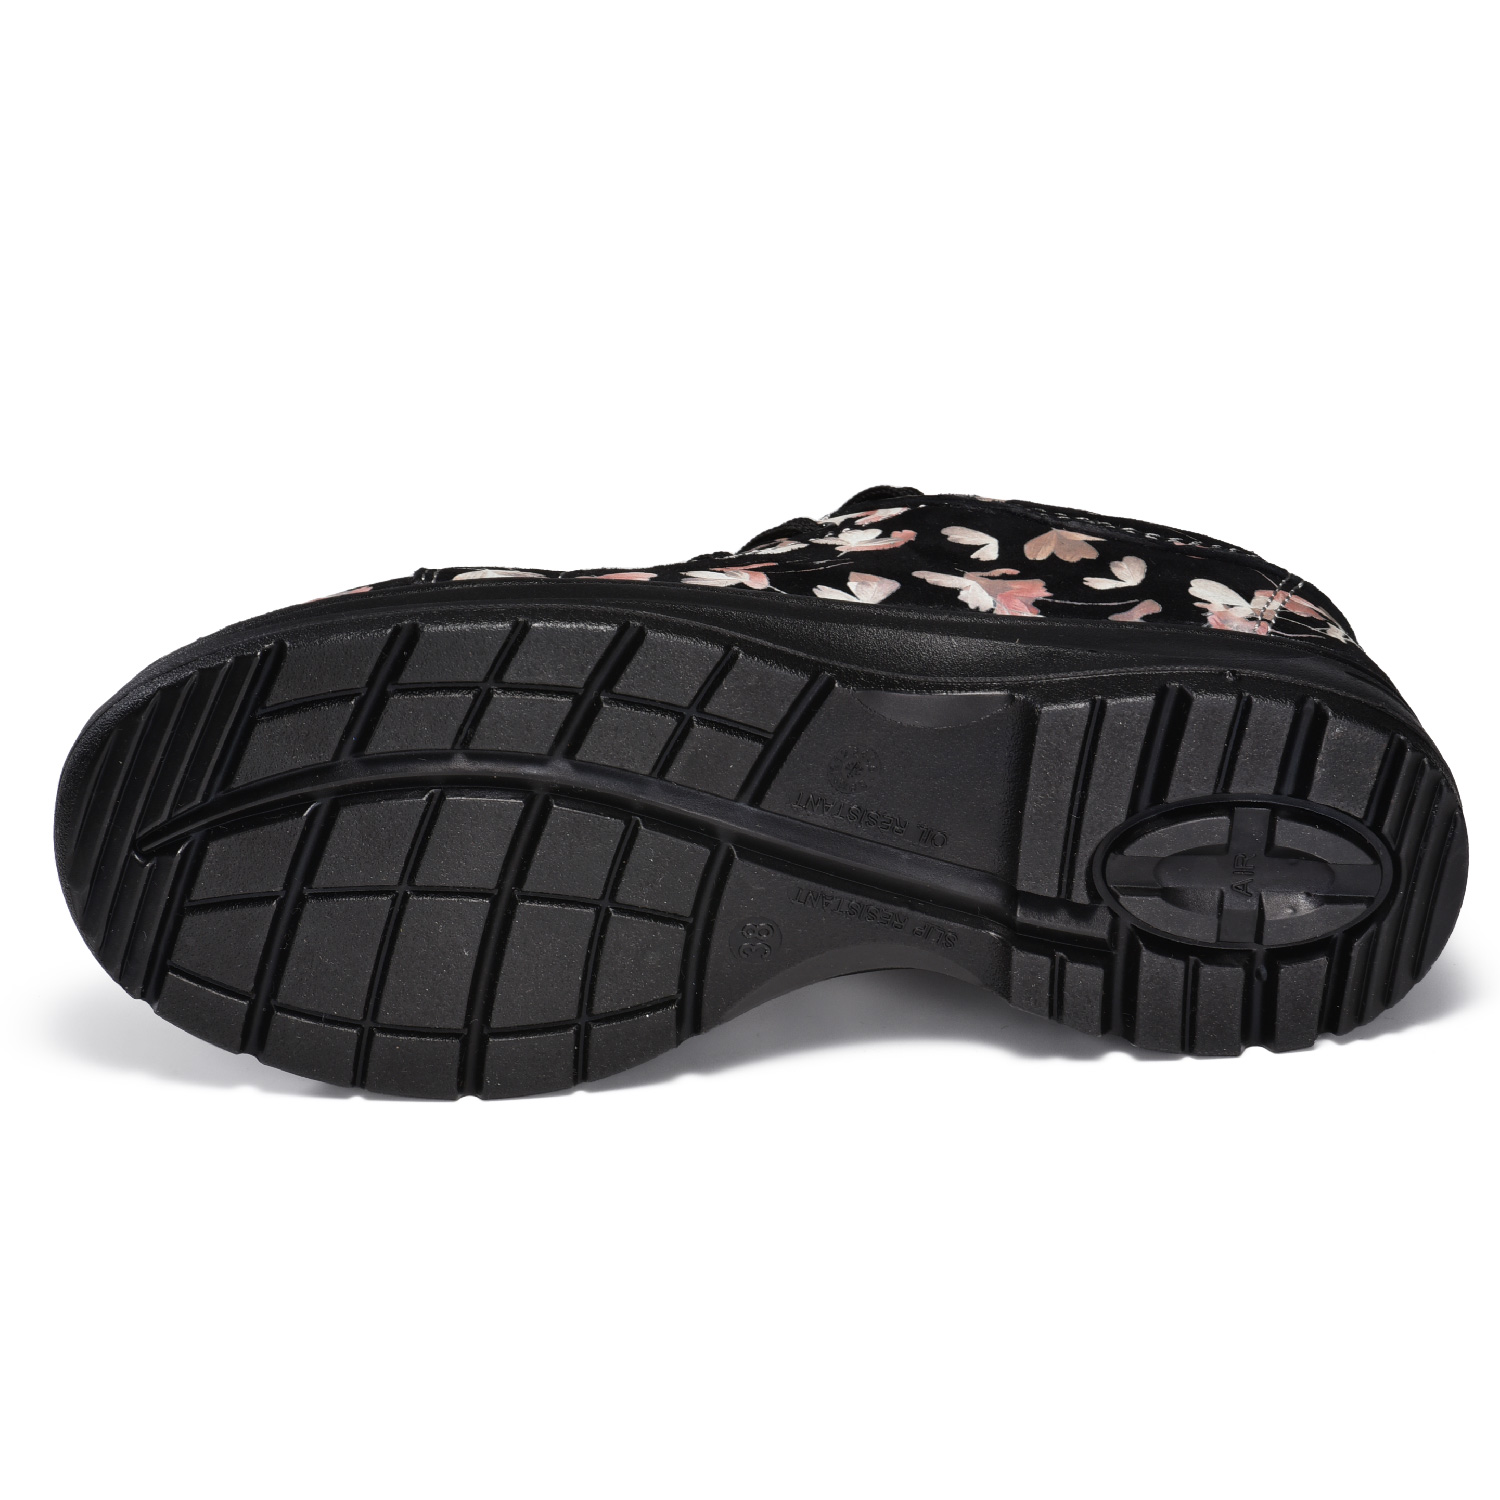 Zapatos de trabajo con punta de acero impermeables Garden Design para mujer L-7526 Rosa